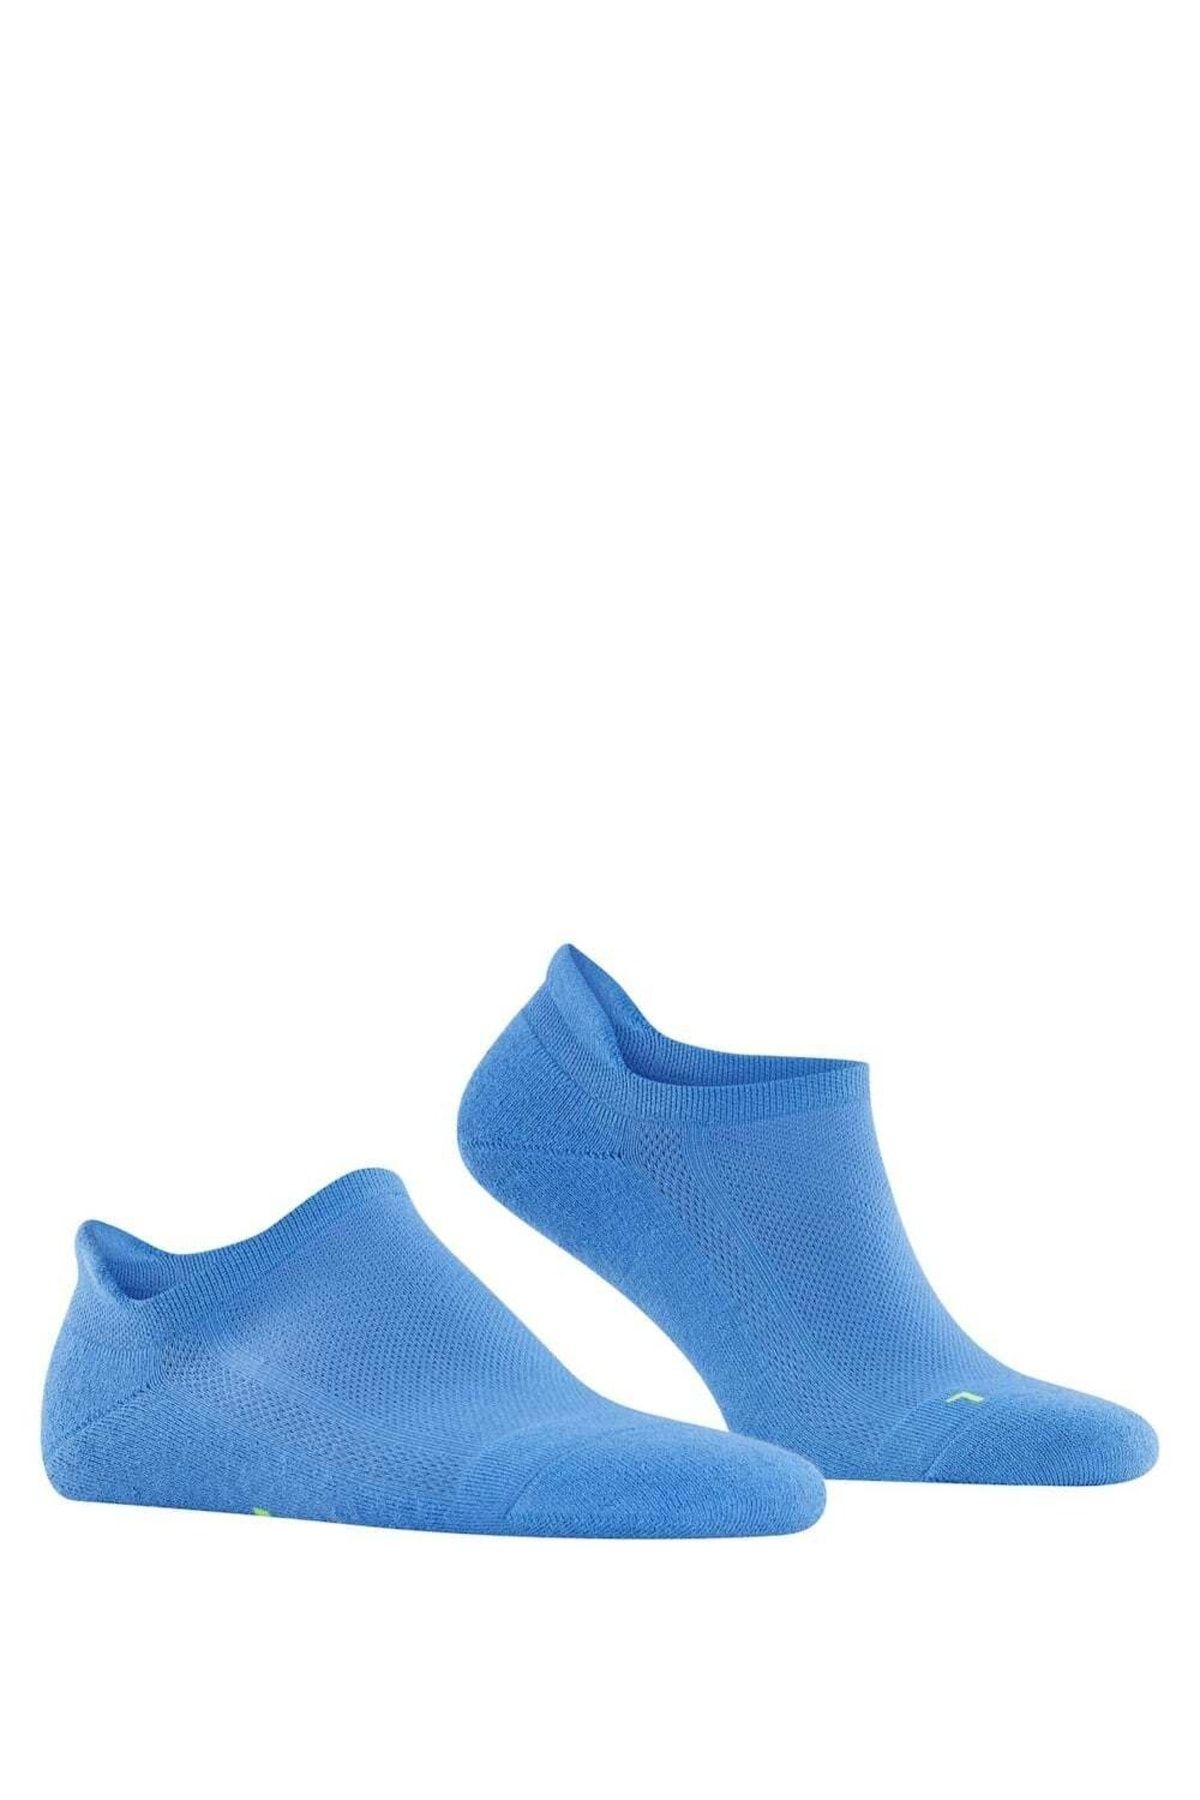 FALKE Unisex Kick, - ultraleicht, 37-48 Sneakersocken Socken, Uni, - Cool Trendyol anatomisch